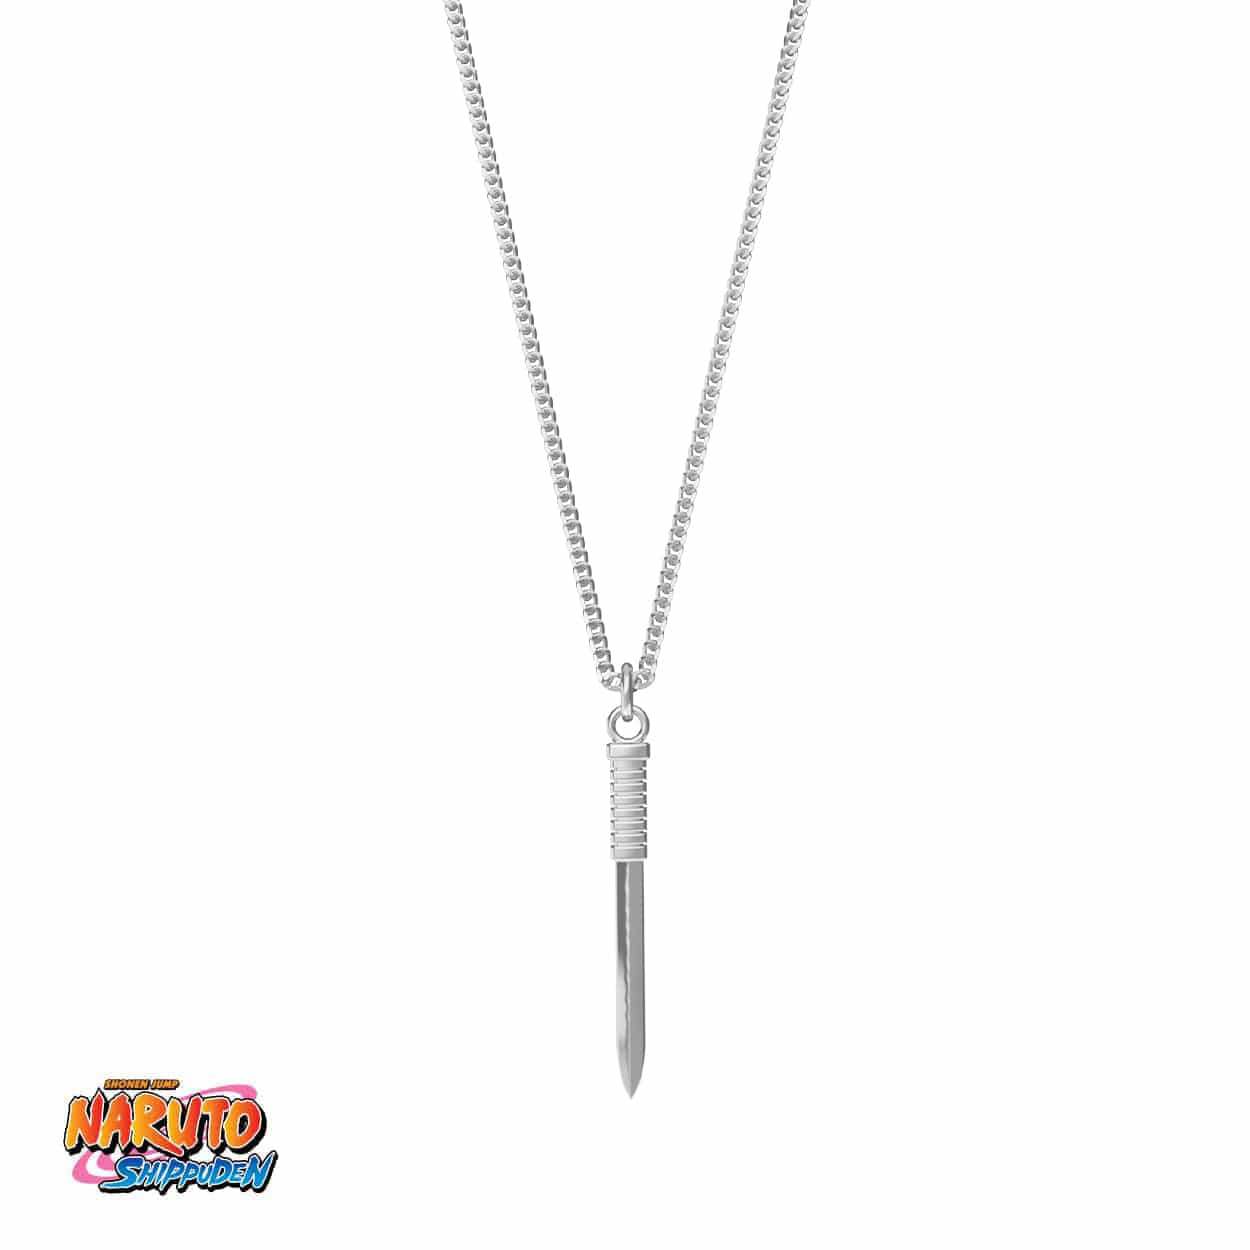 Naruto™ Killer Bee Sword Necklace